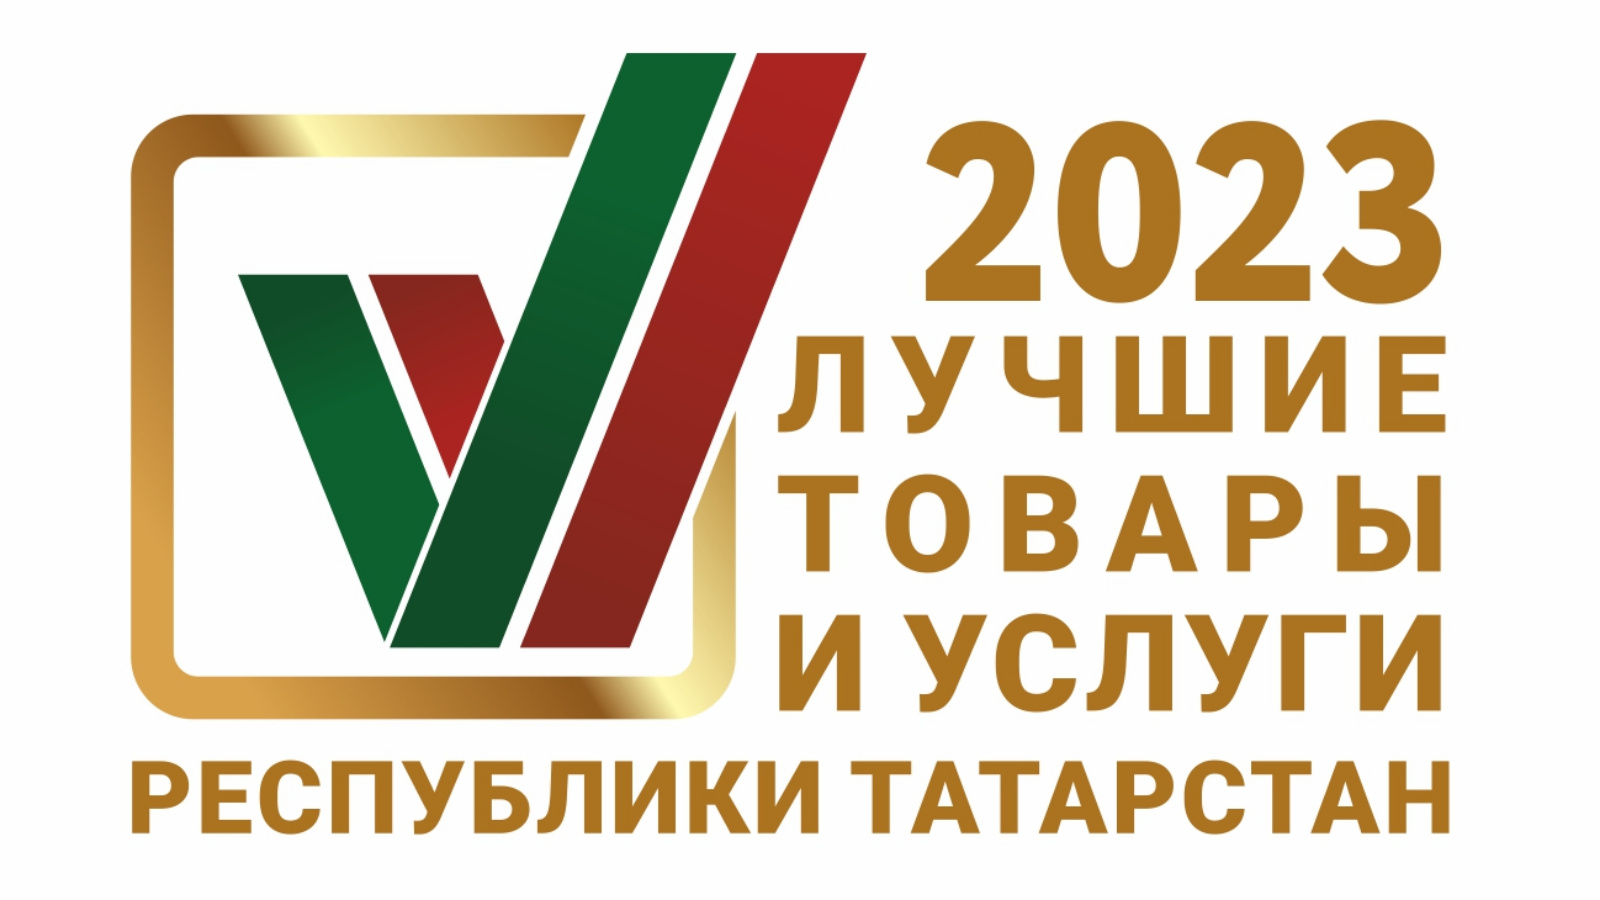 На конкурс «Лучшие товары и услуги Республики Татарстан» в 2023 году поступило 397 заявок